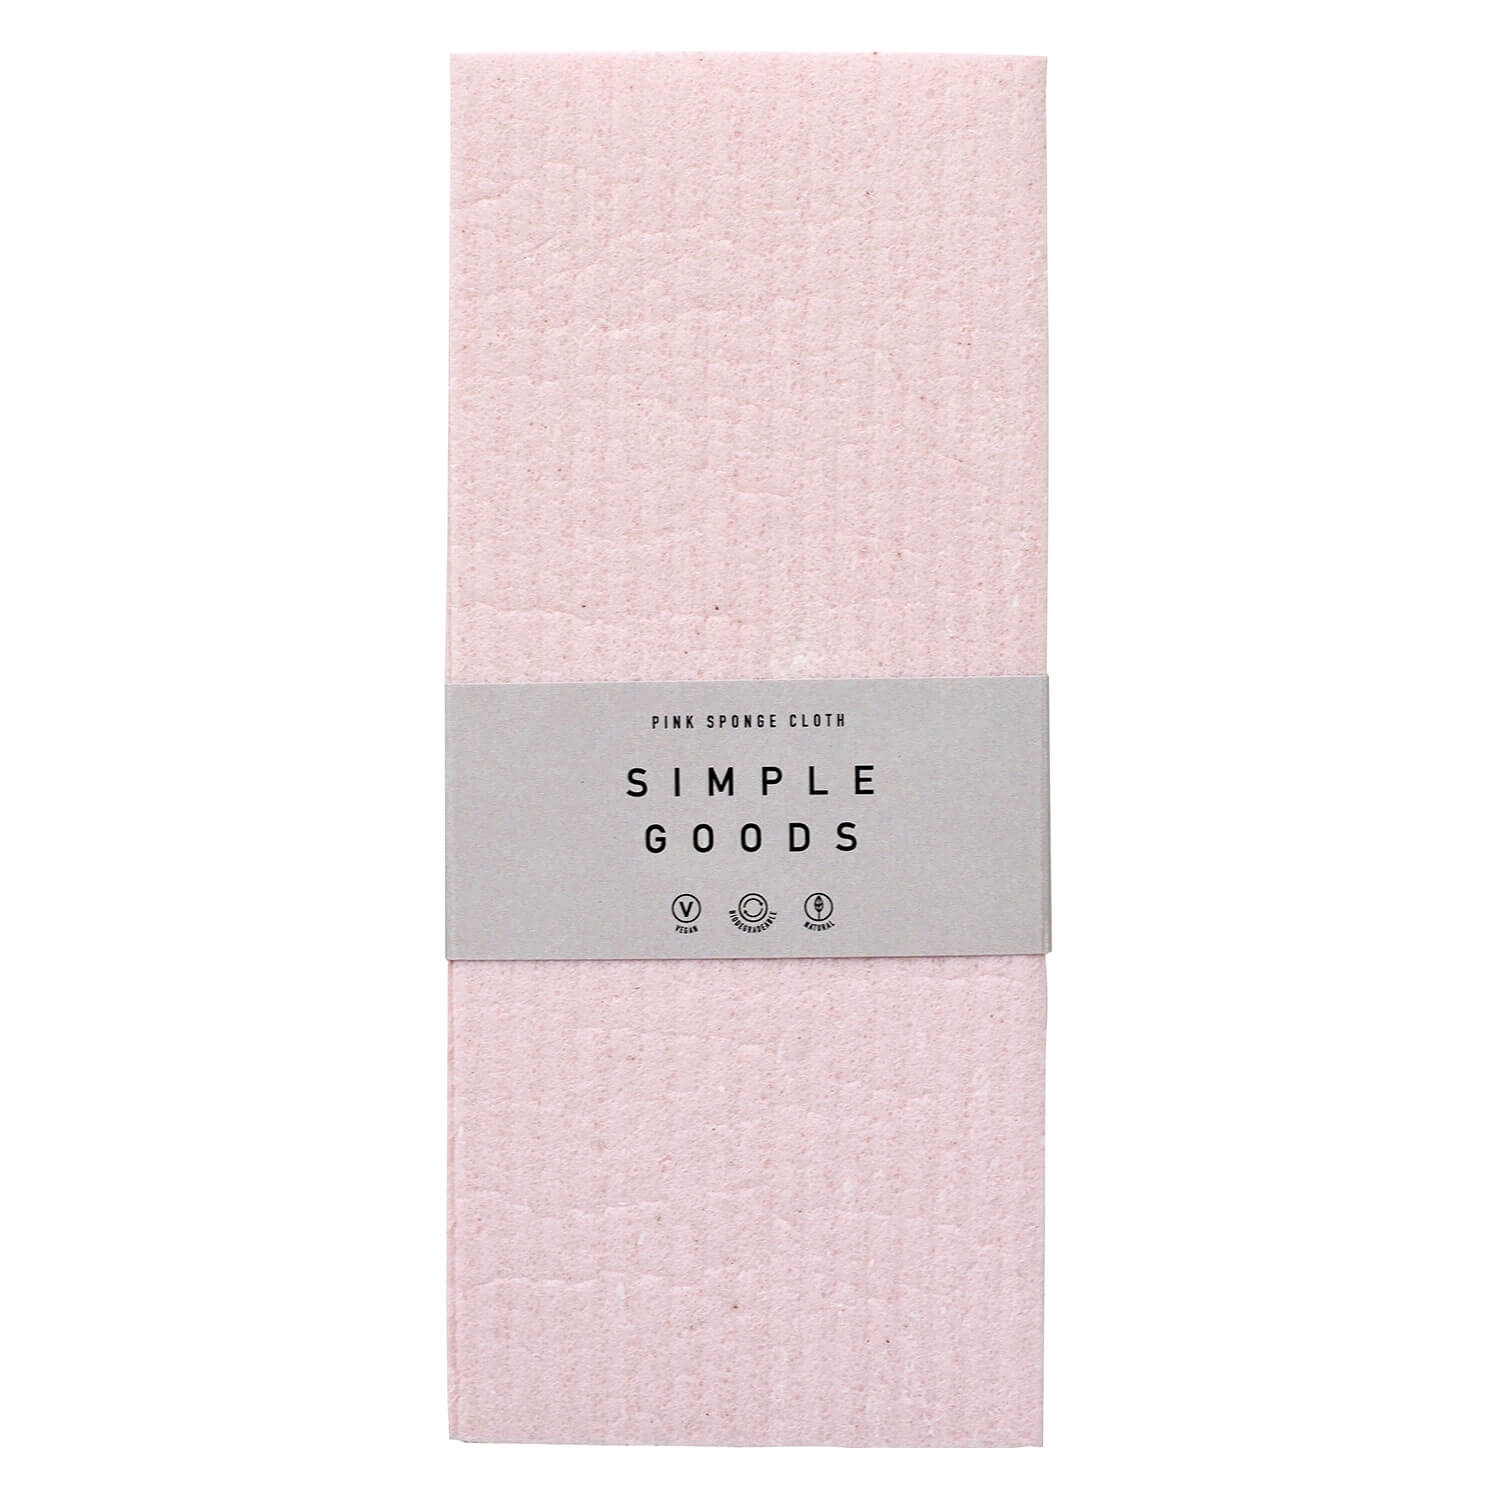 Produktbild von SIMPLE GOODS - Sponge Cloth Pink